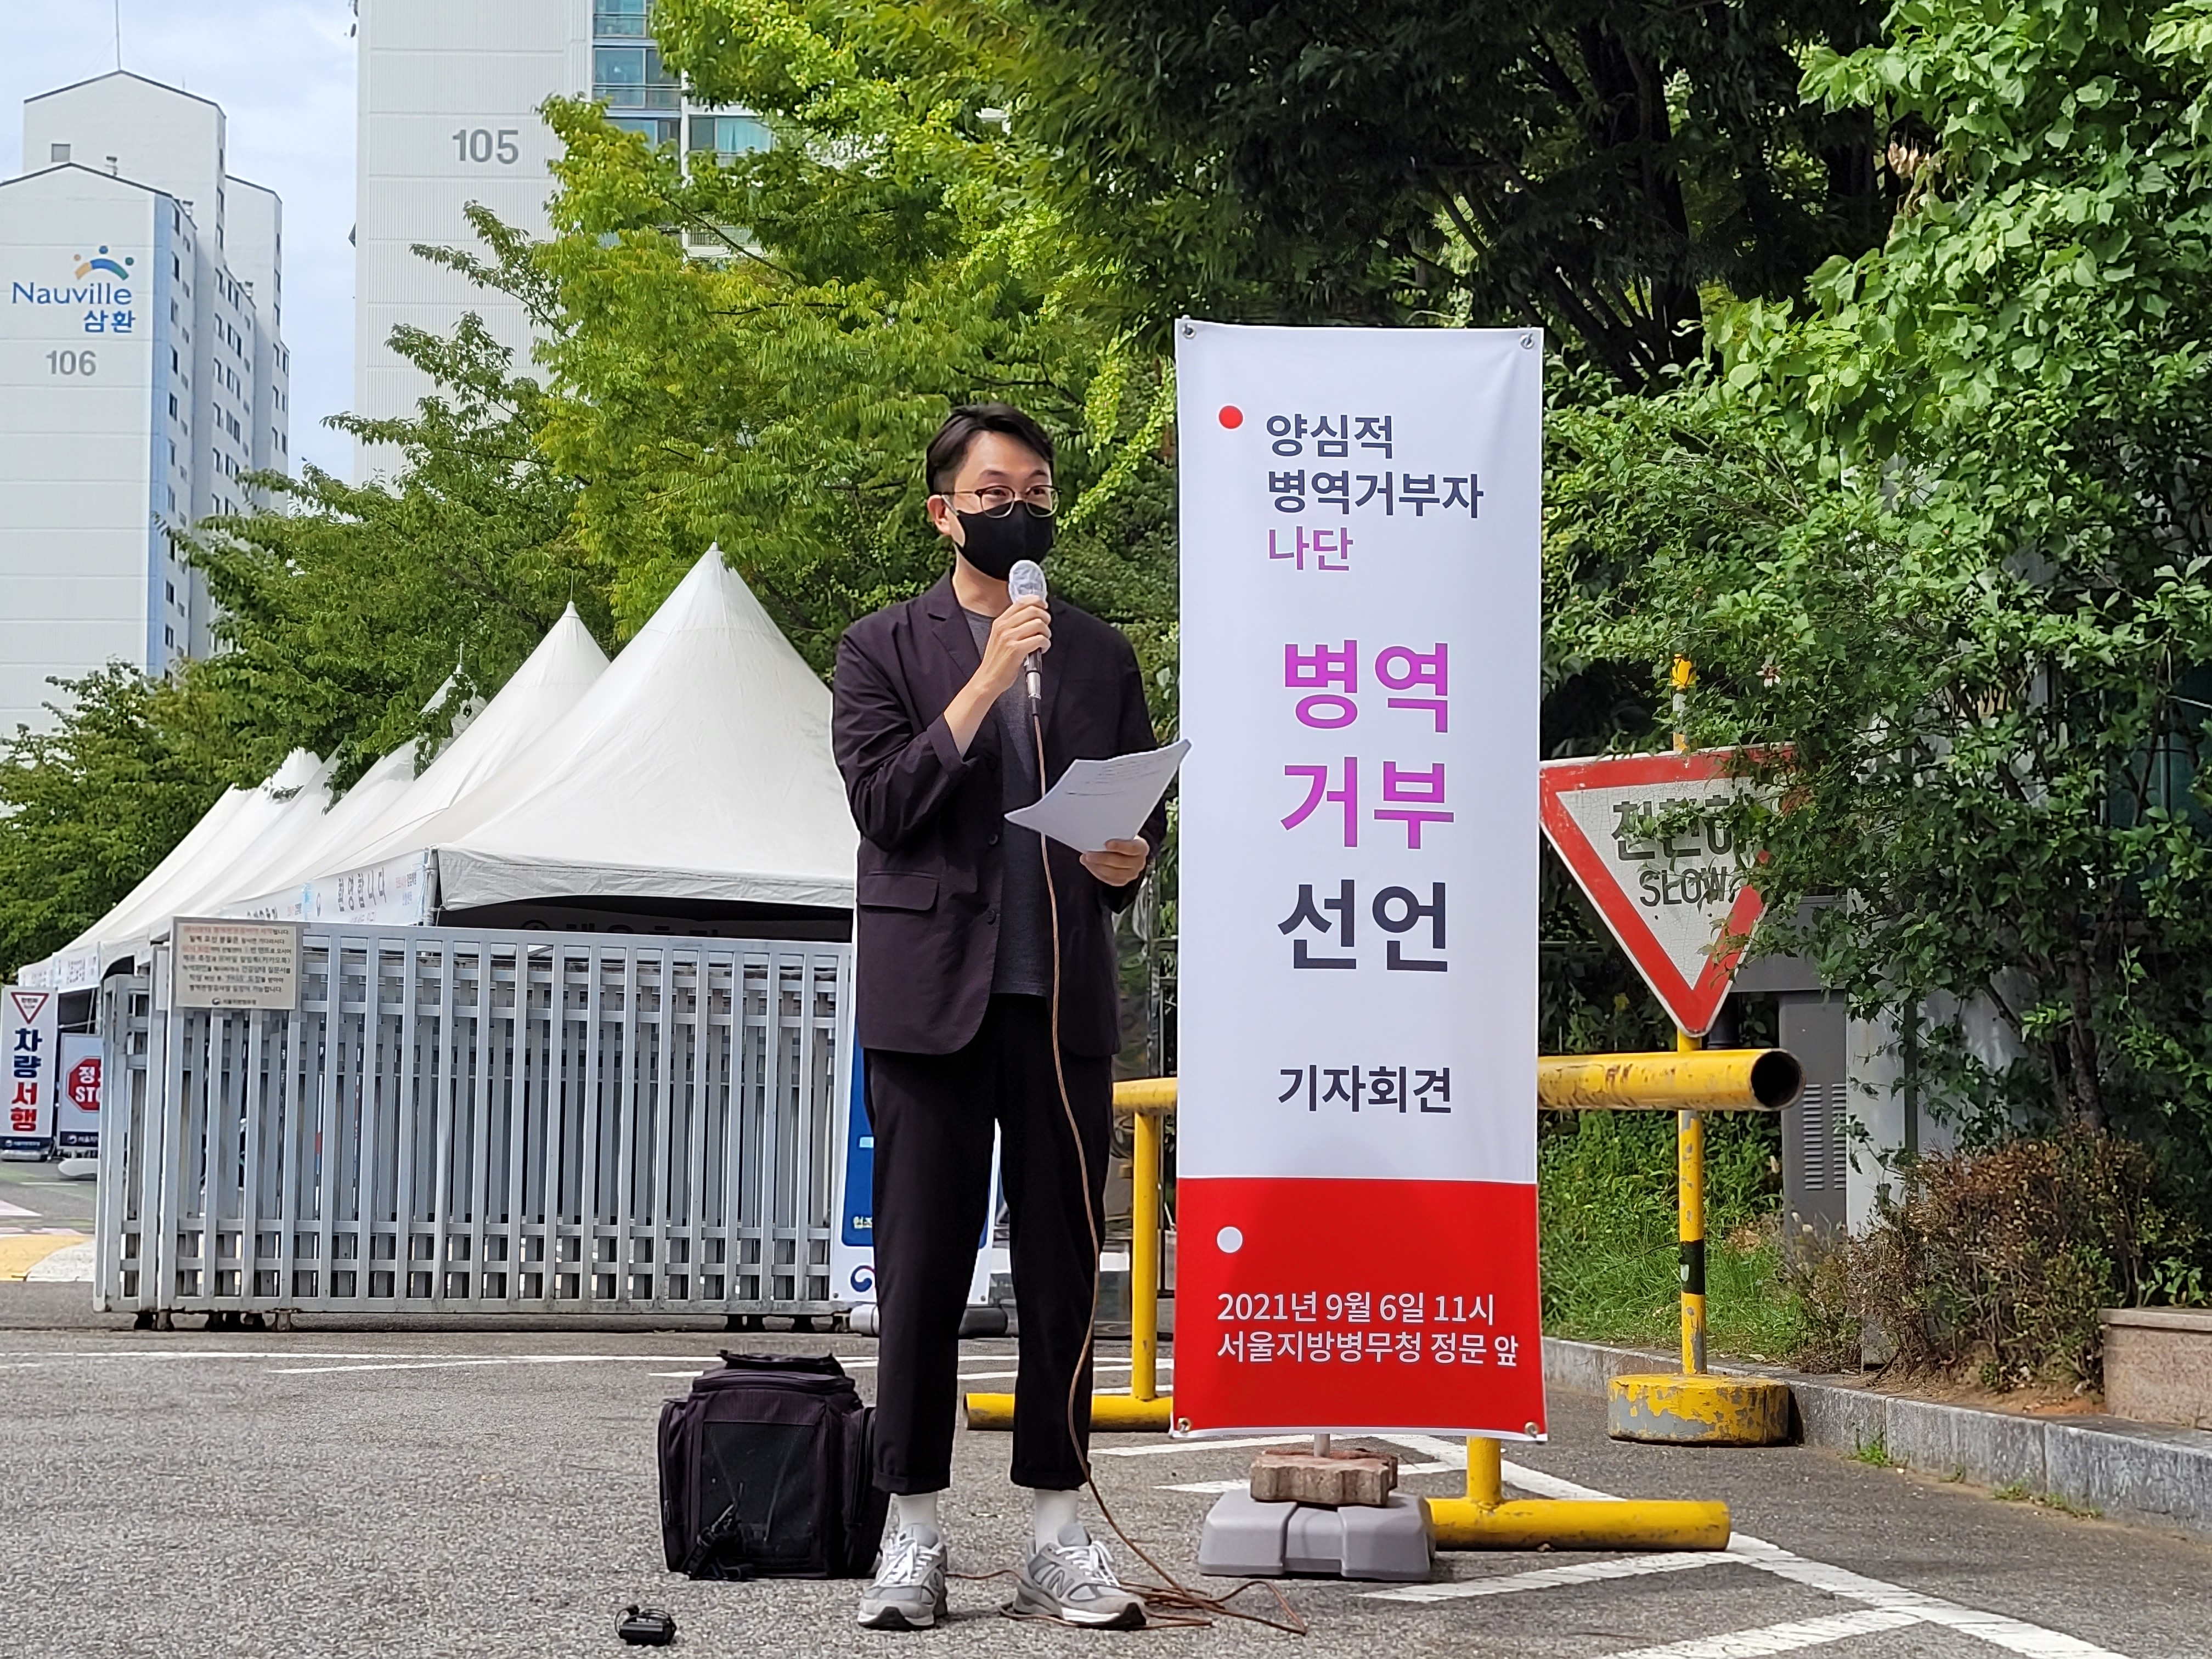 양심적 병역거부자 나단(32)씨가 6일 서울지방병무청 앞에서 열린 기자회견에 참석해 발언문을 읽고 있다. 최영권 기자 story@seoul.co.kr